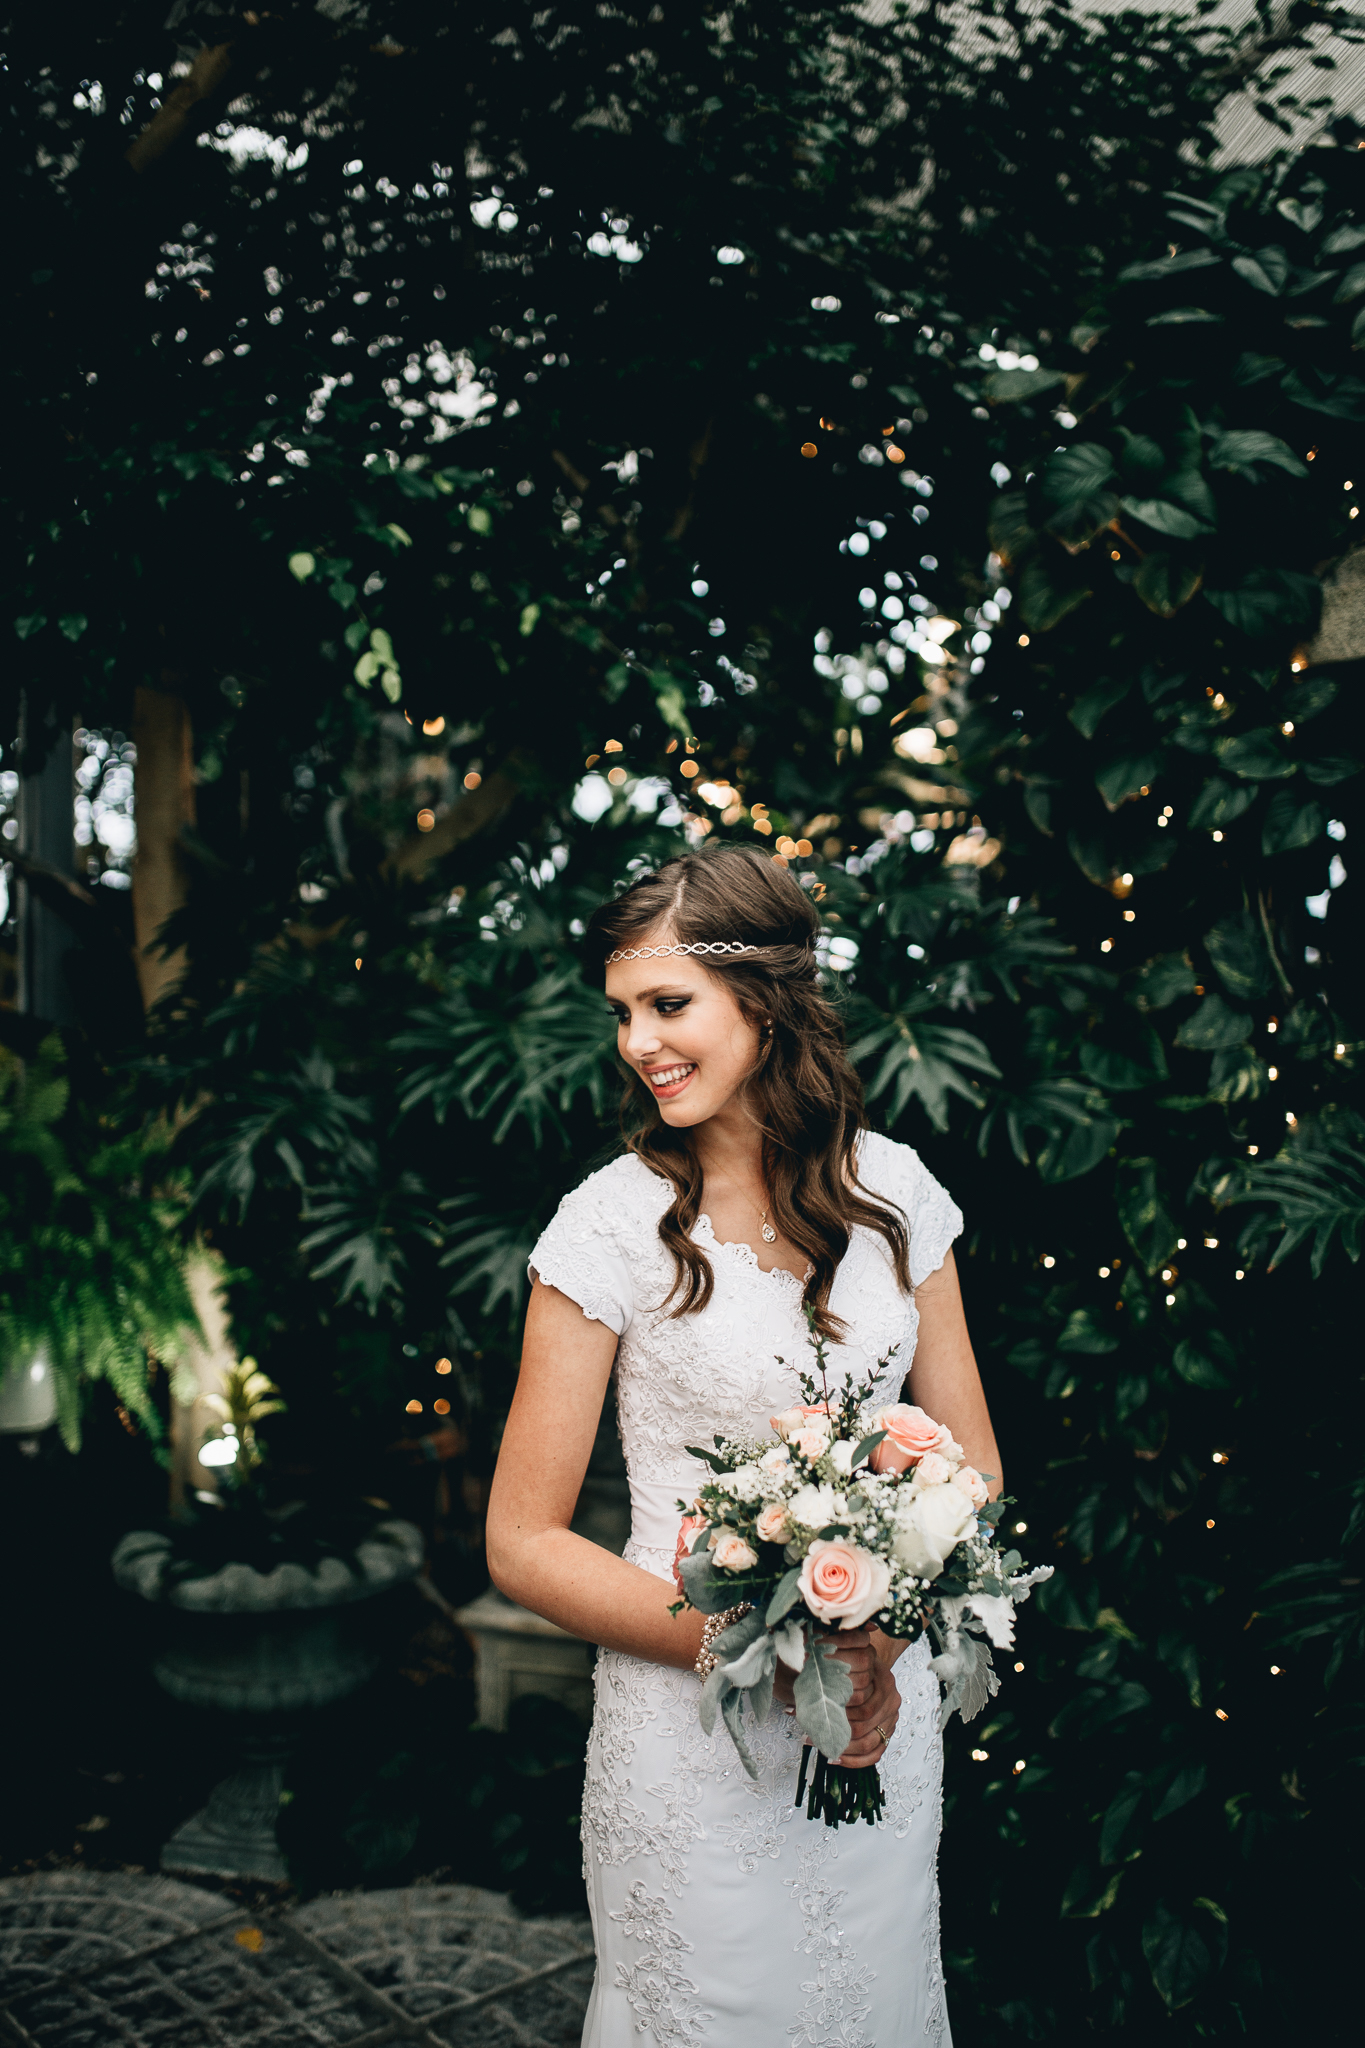 Jacob + Elysa | Utah Valley Wedding Photographer - Alice Shoots People